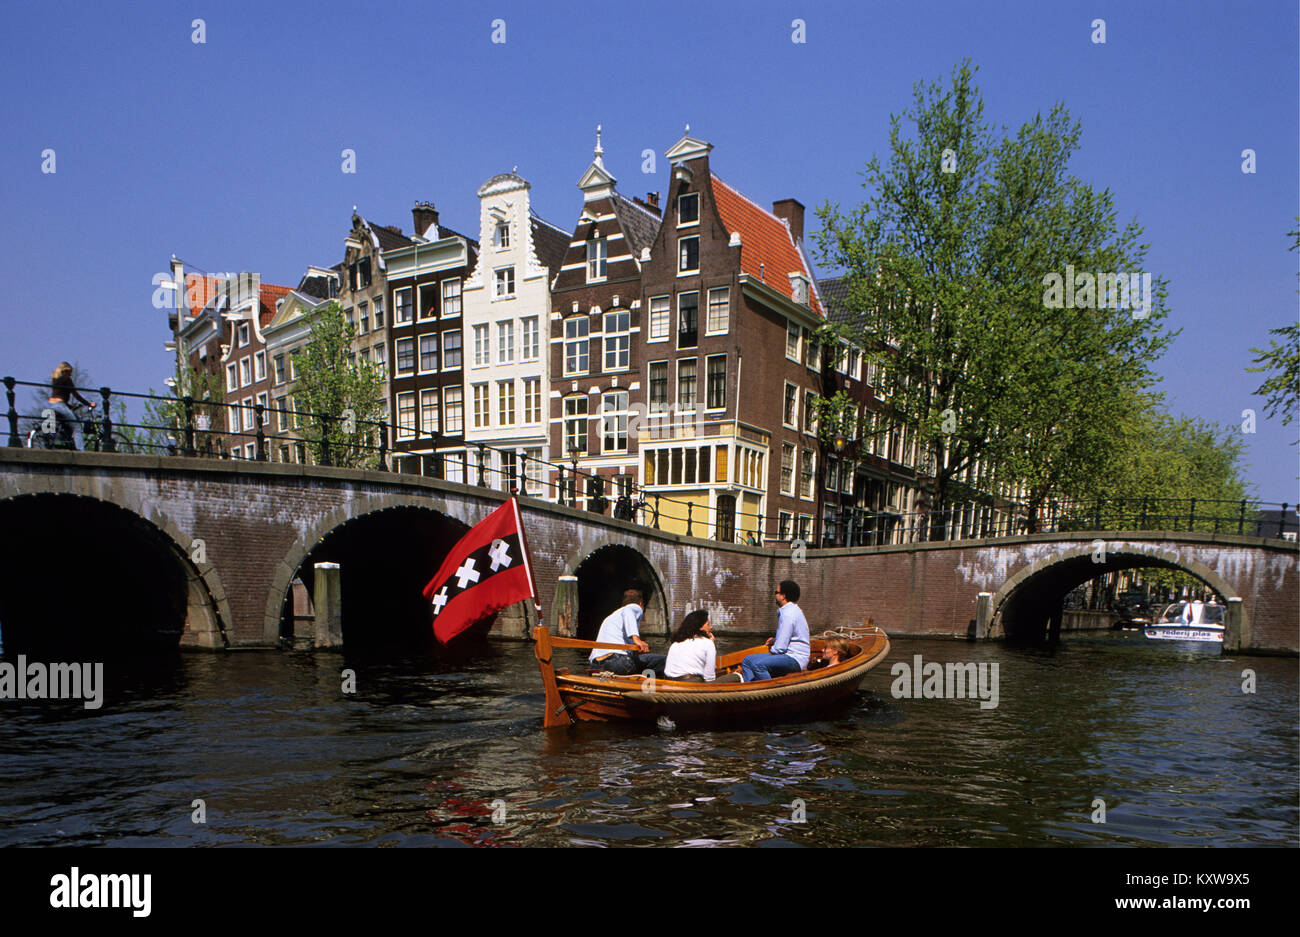 1515-12-04Les Pays-Bas, Amsterdam, âge d'or des maisons à canal appelé Keizersgracht. UNESCO World Heritage Site. 17e siècle. Bateaux et Amsterdam f Banque D'Images